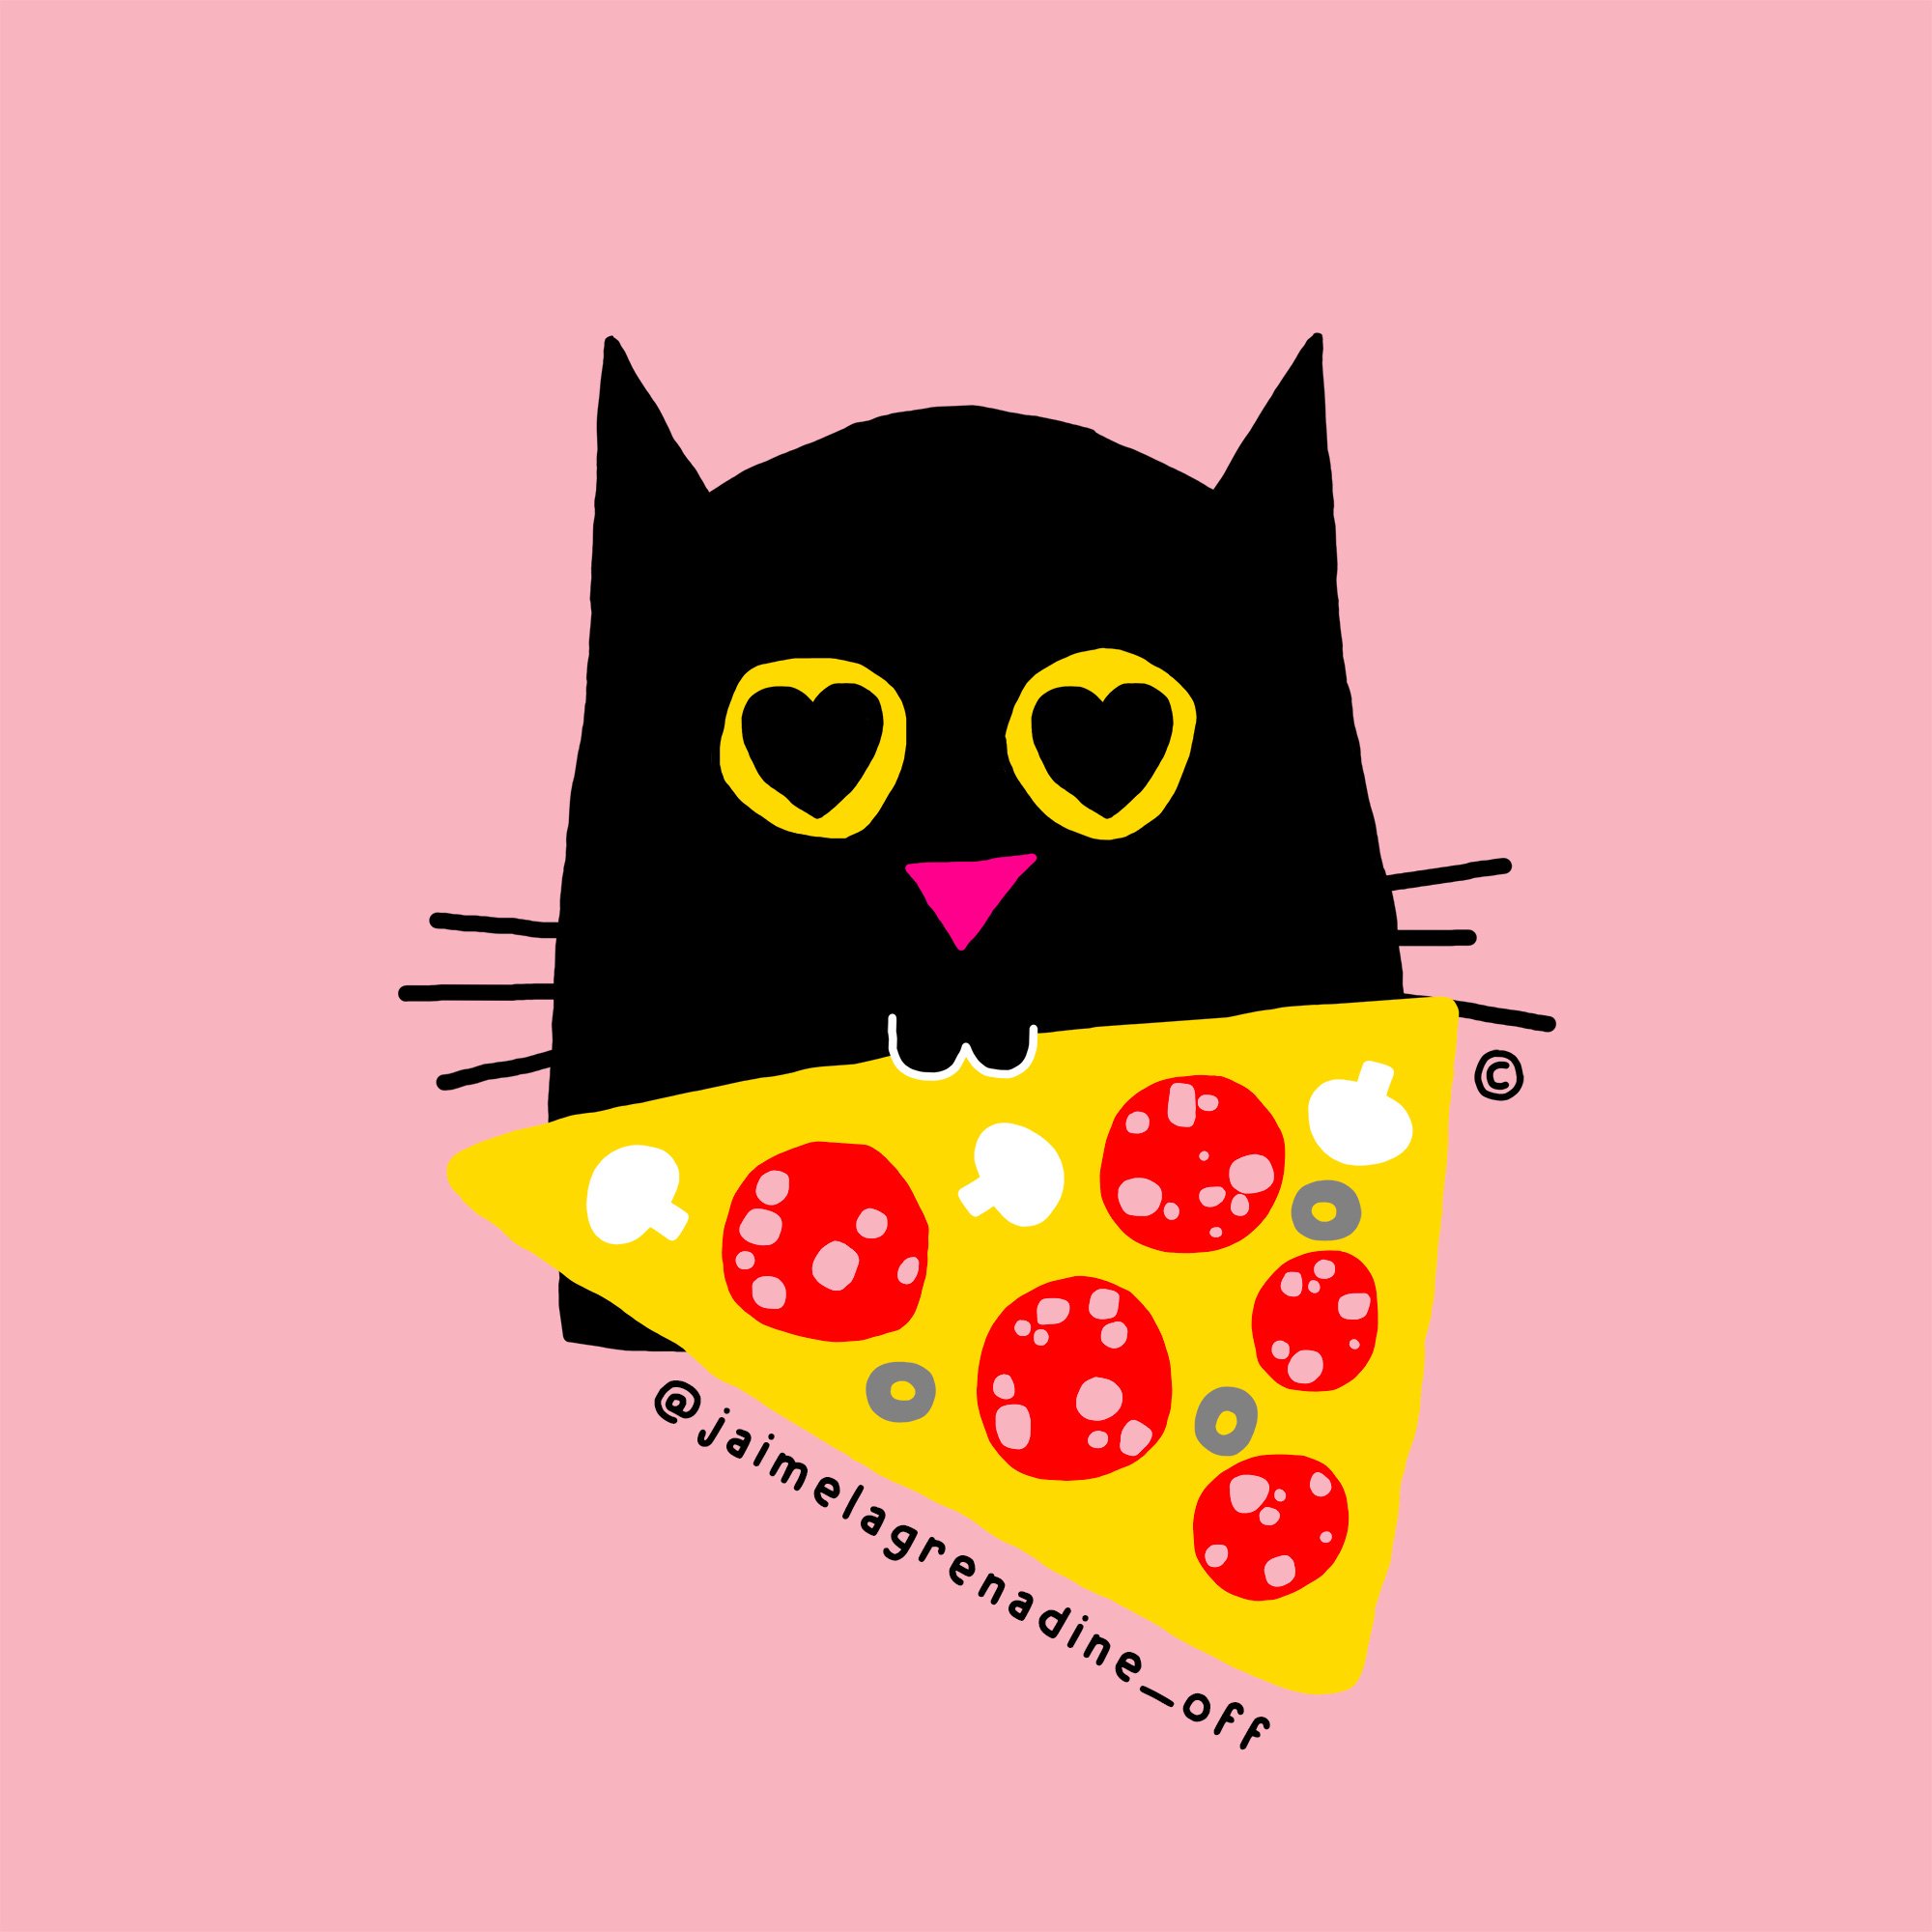 Ce qui est &agrave; toi et &agrave; moi - #jaimelagrenadine &copy;
.
#chat #cat #pizza #illustration #mood #humeur #food